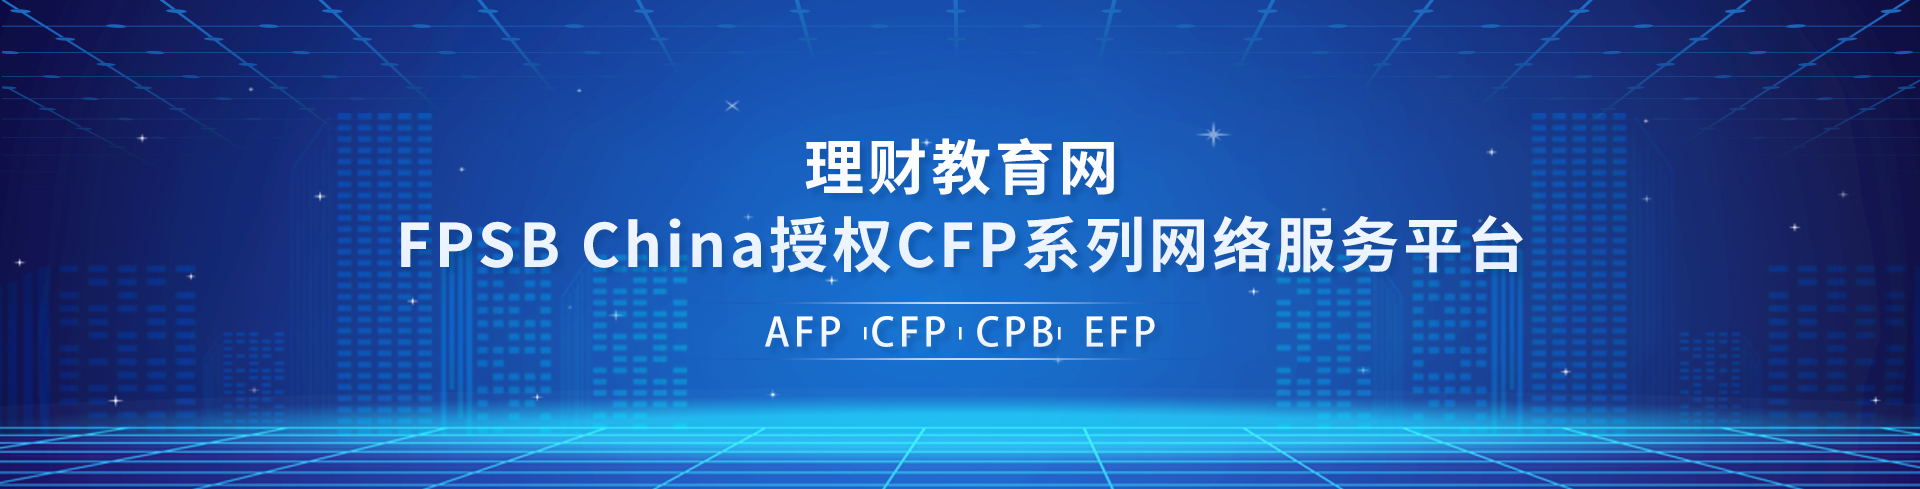 AFP网络培训服务平台